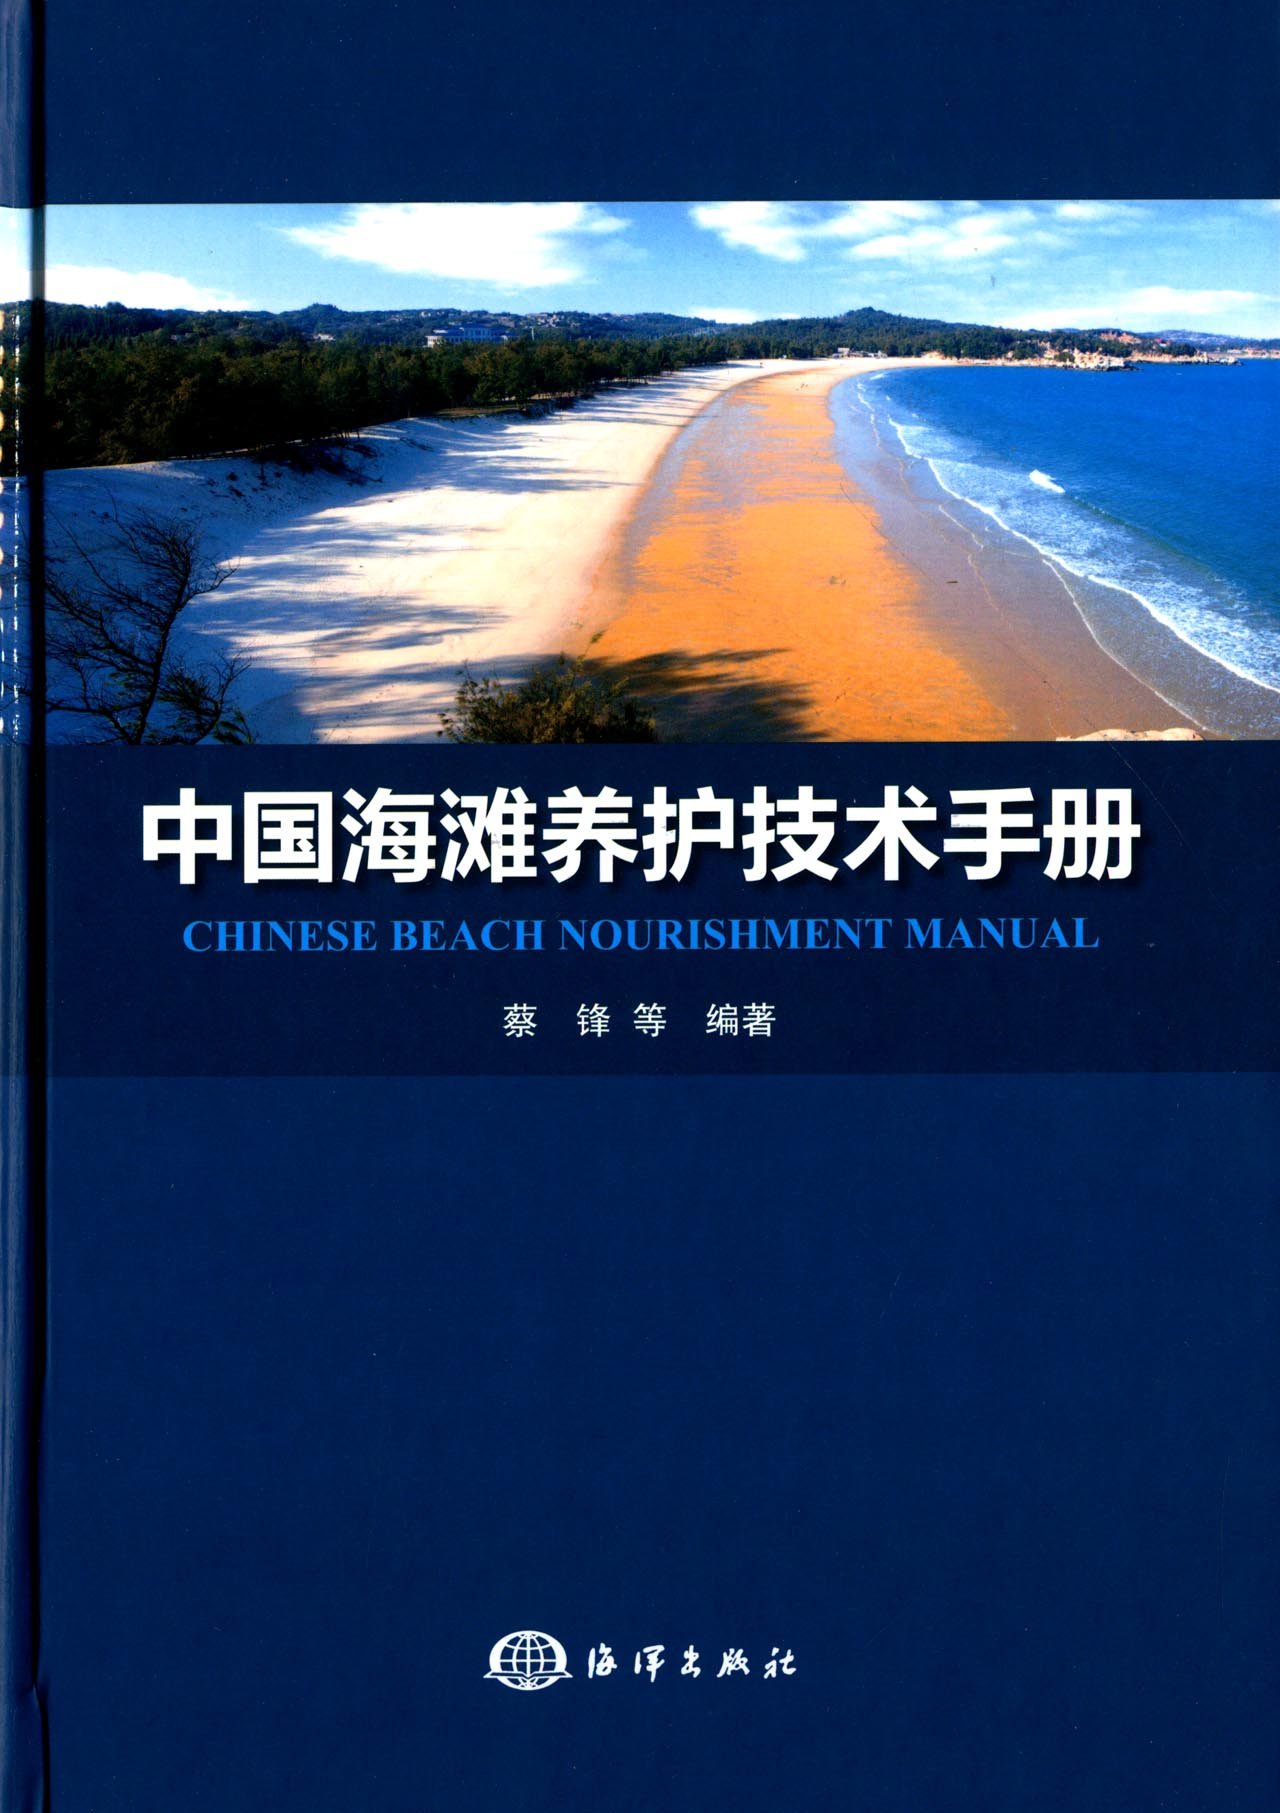 中國海灘養護技術手冊